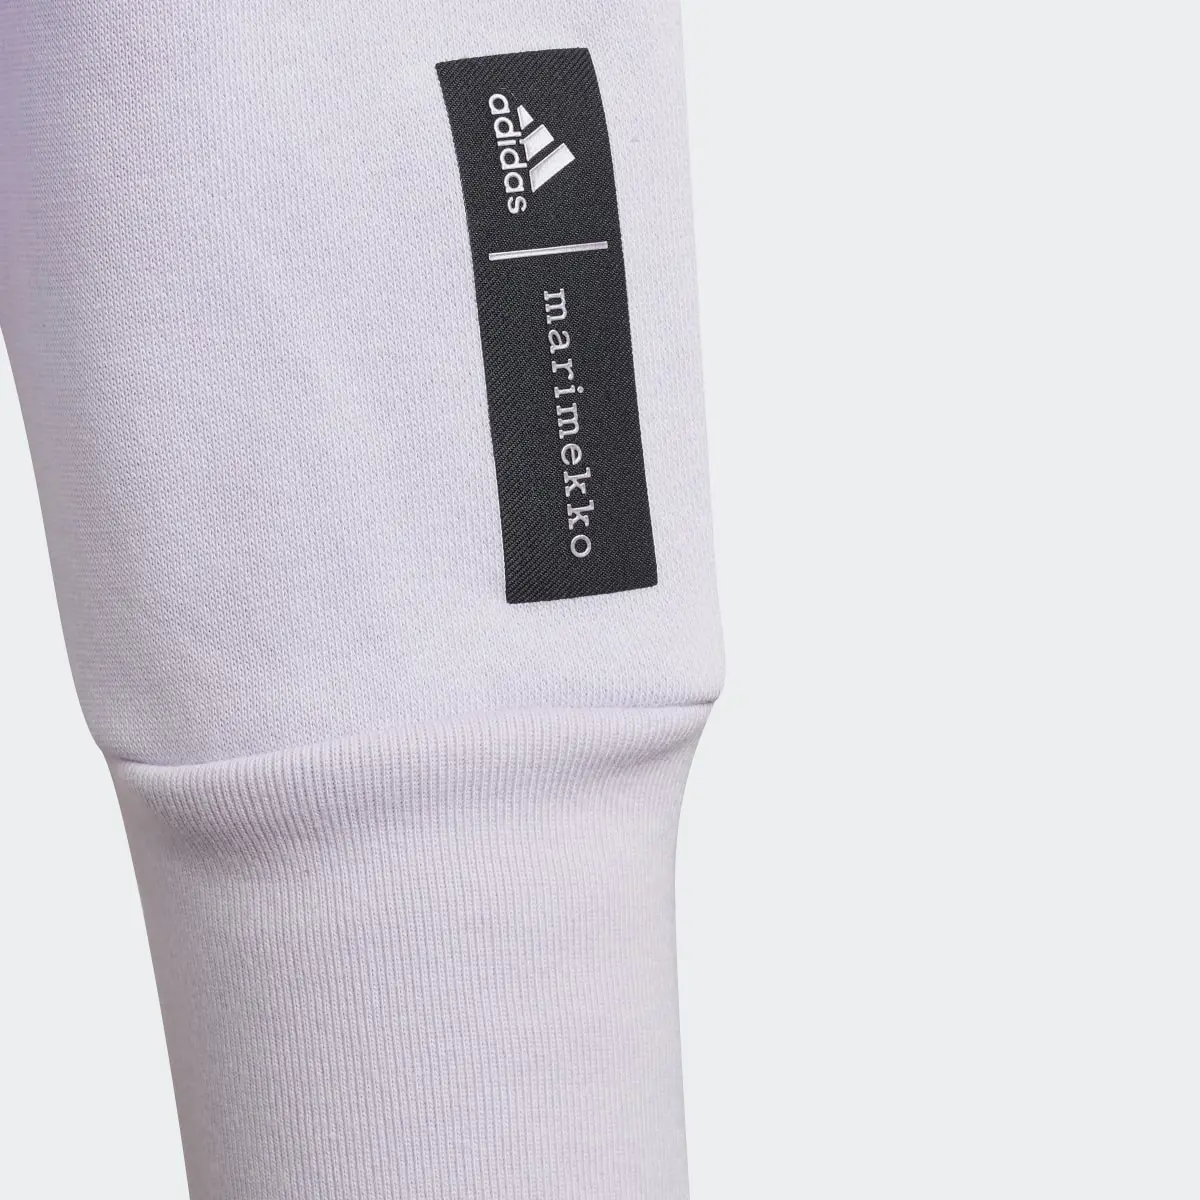 Adidas Sweat-shirt Marimekko. 3